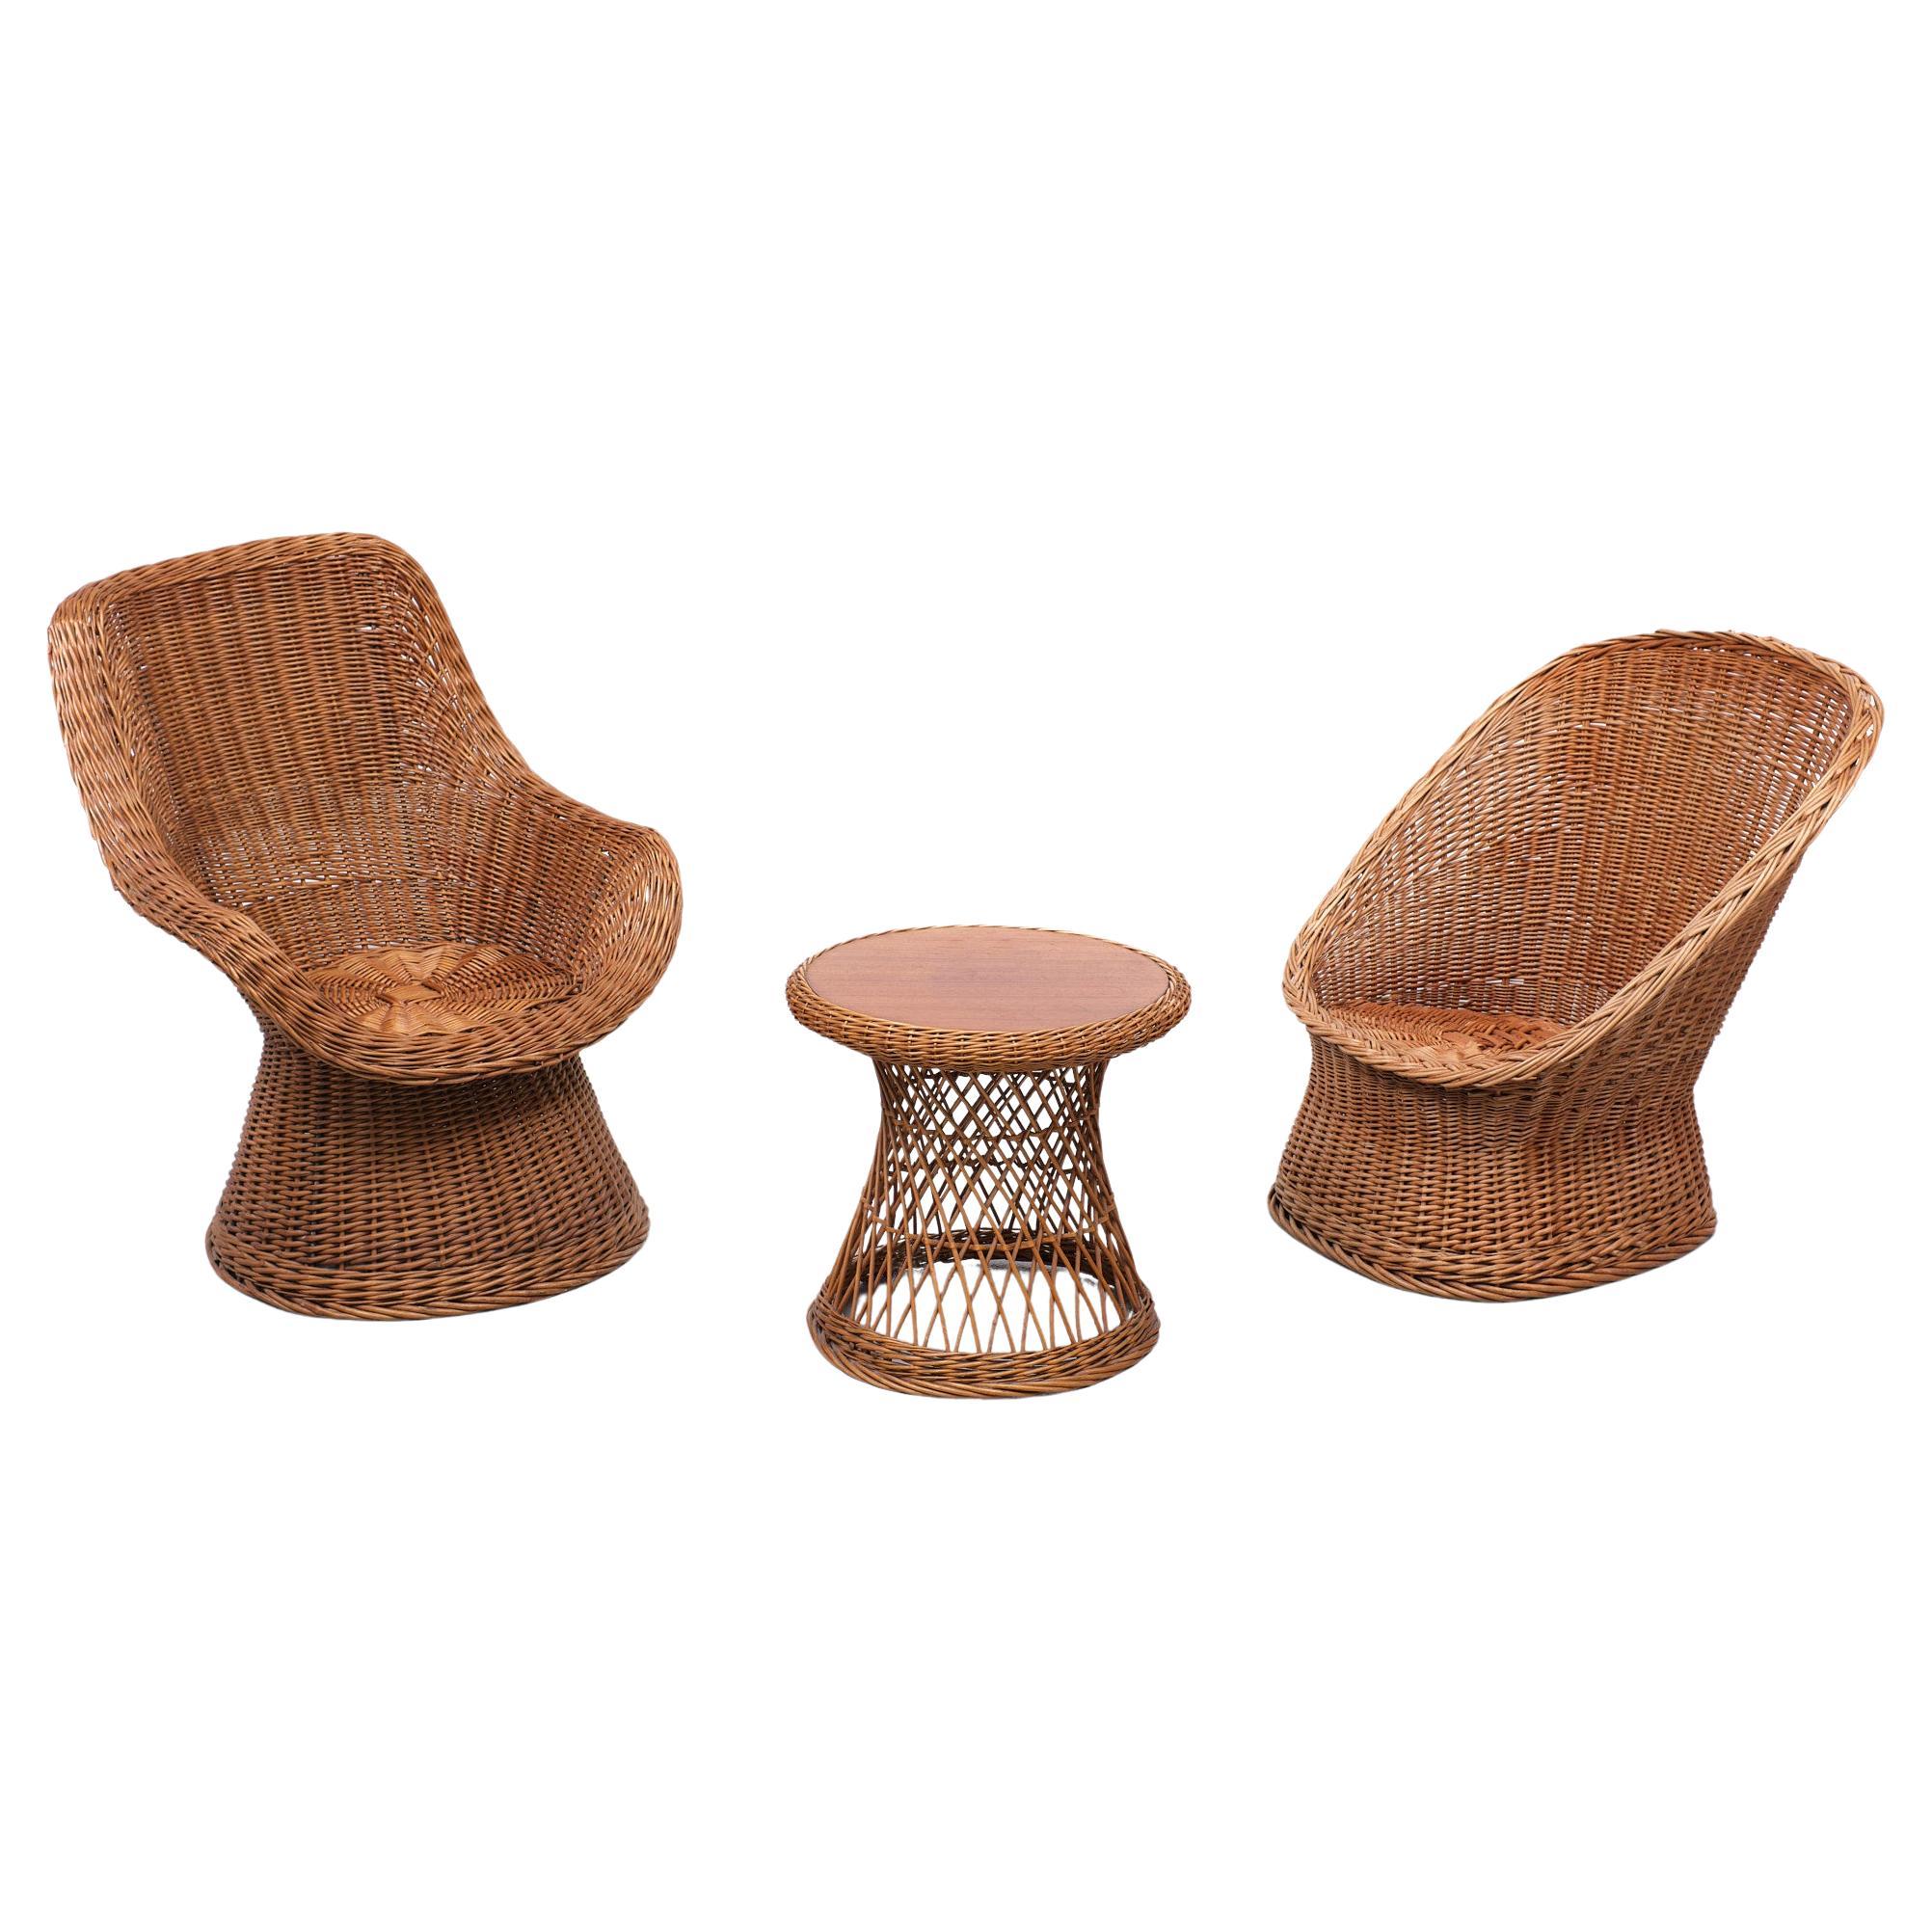 Très bel ensemble de chaises et de tables  fabriqué à Noordwolde  Nord des Pays-Bas, pour Rohe dans les années 1960, tout est fait à la main. Les chaises sont légèrement différentes.
Mais ils ont été fabriqués au même endroit et à la même époque. Il